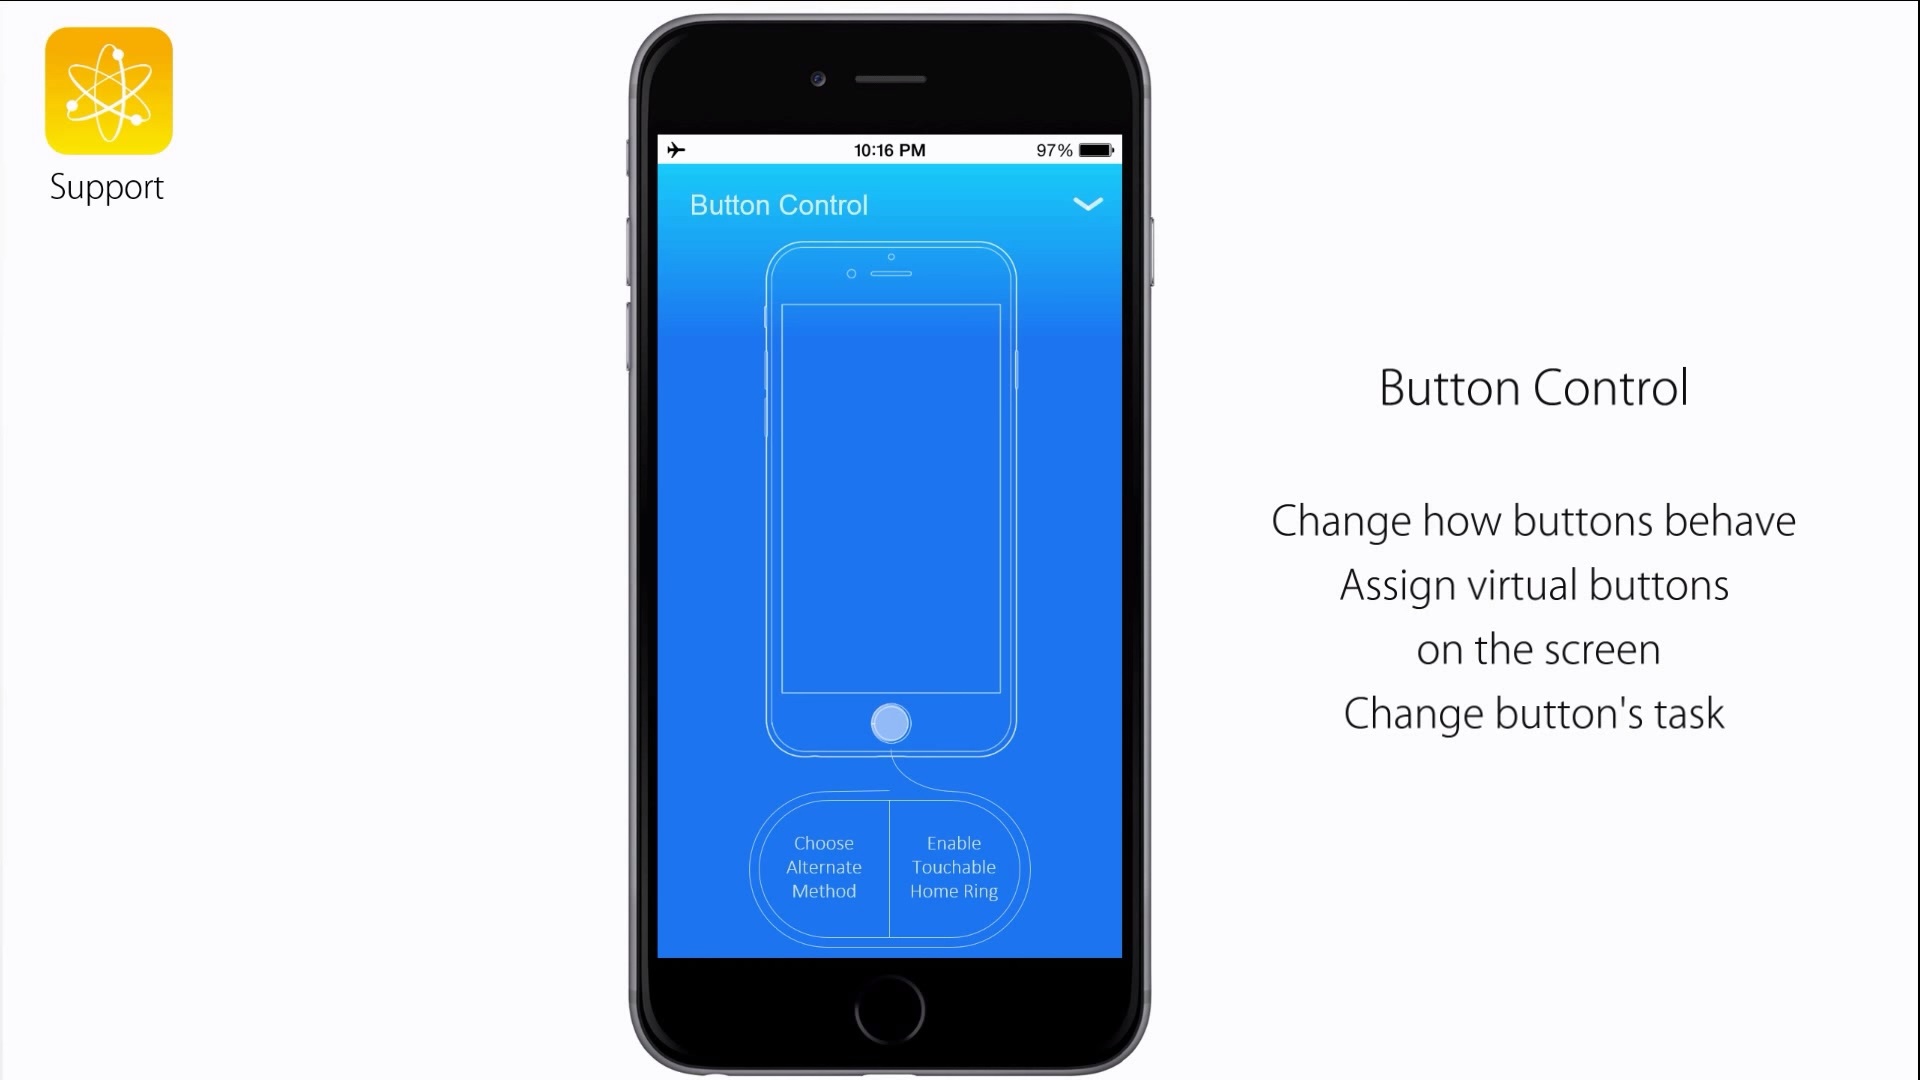 15 แนวคิดโดนๆจาก iOS 9 concept video ที่ทาง Apple น่าจะเอาไปพิจารณา